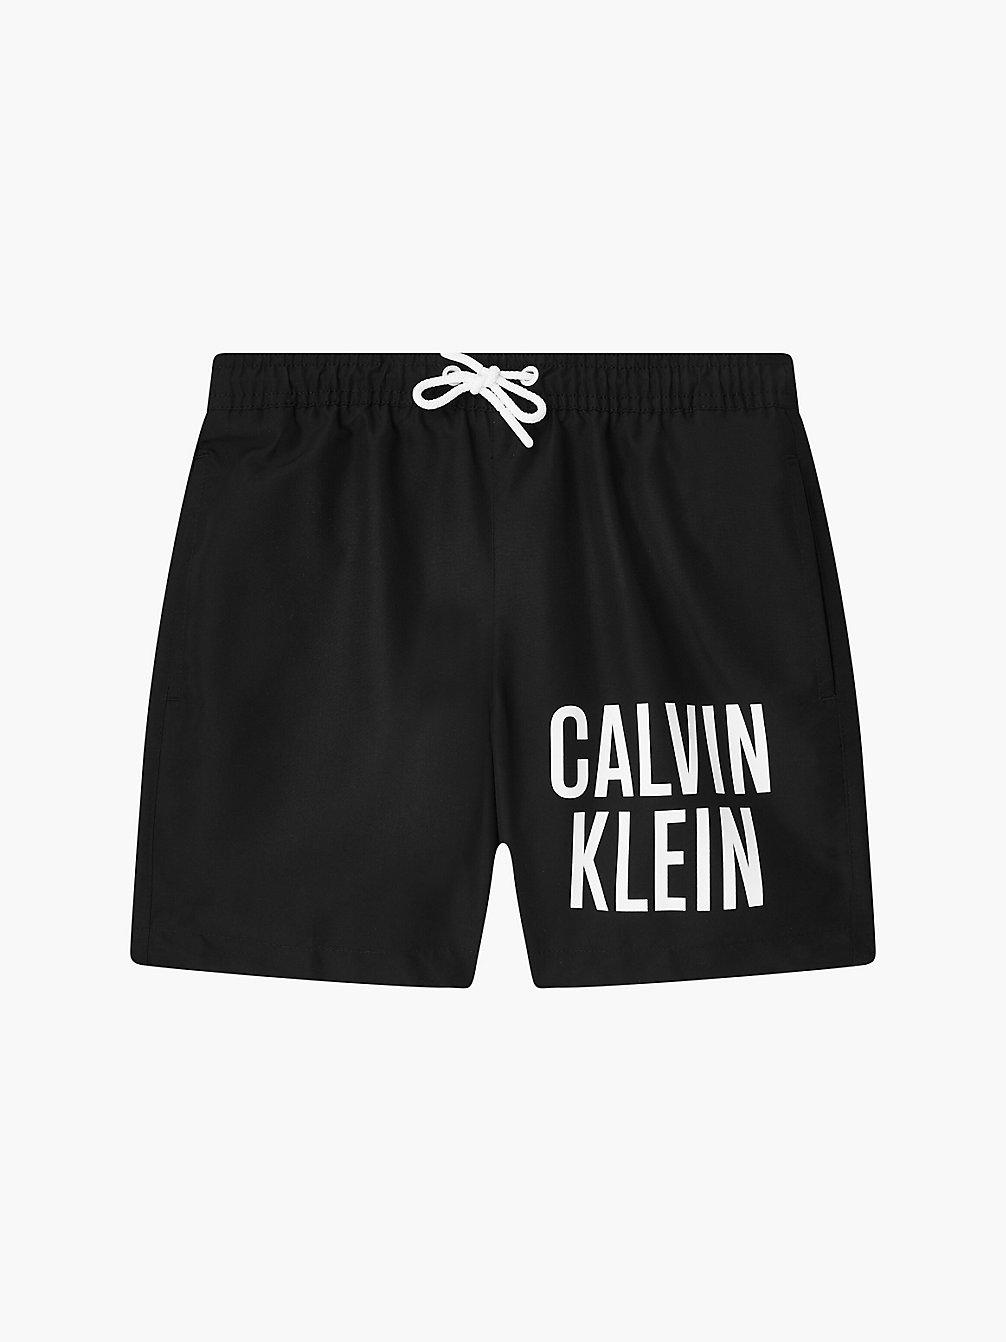 PVH BLACK > Плавательные шорты для мальчиков - Intense Power > undefined boys - Calvin Klein